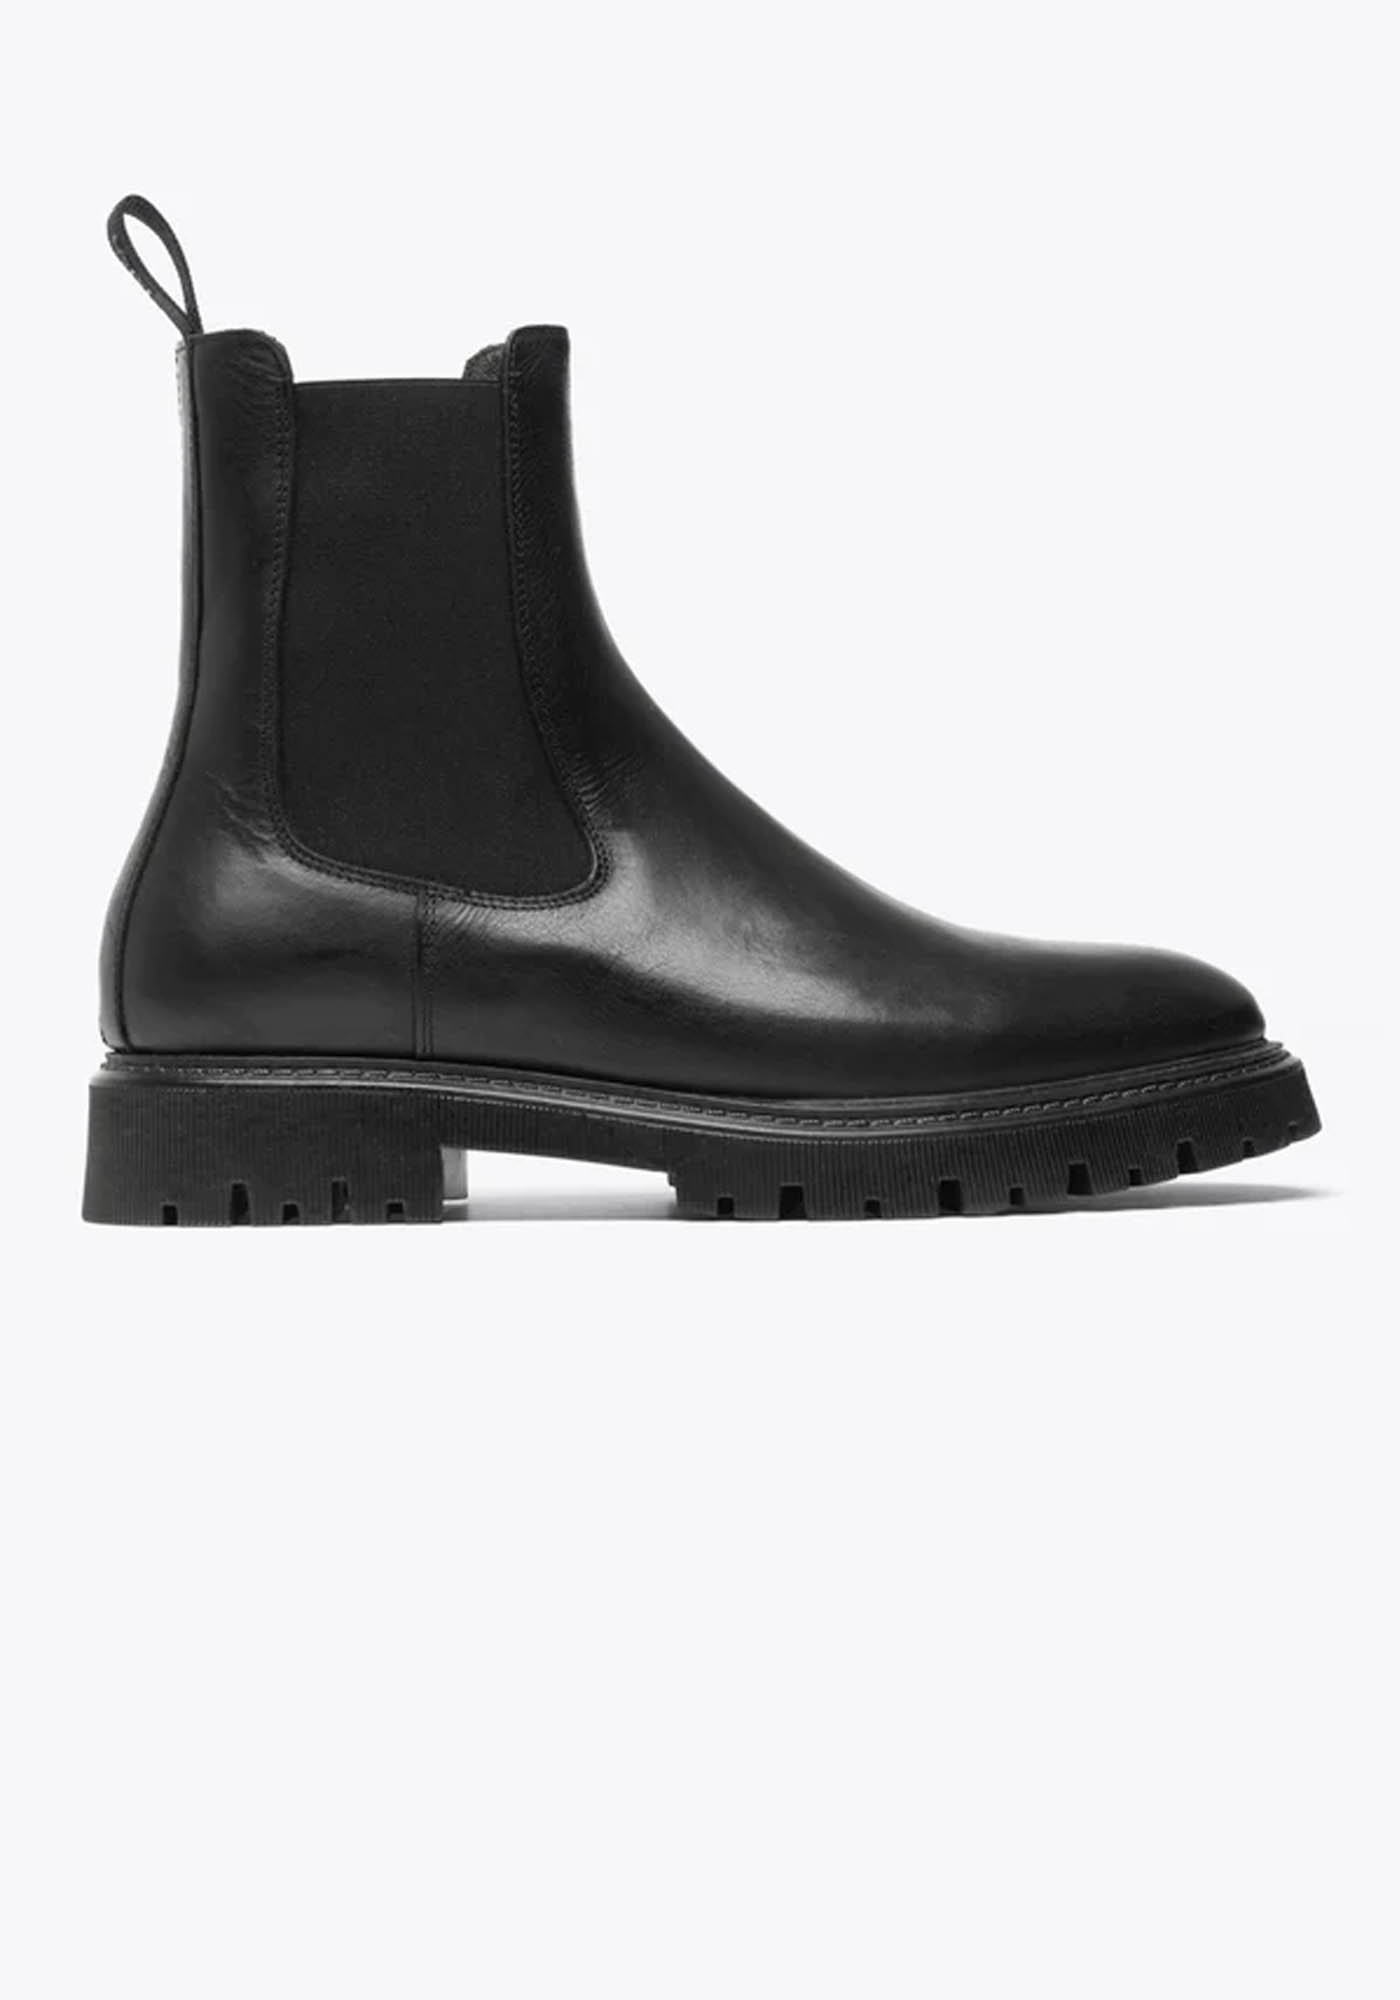 Les Deux Δερμάτινα Chelsea Boots της σειράς Tatum - LDM820045 100100 Black Black